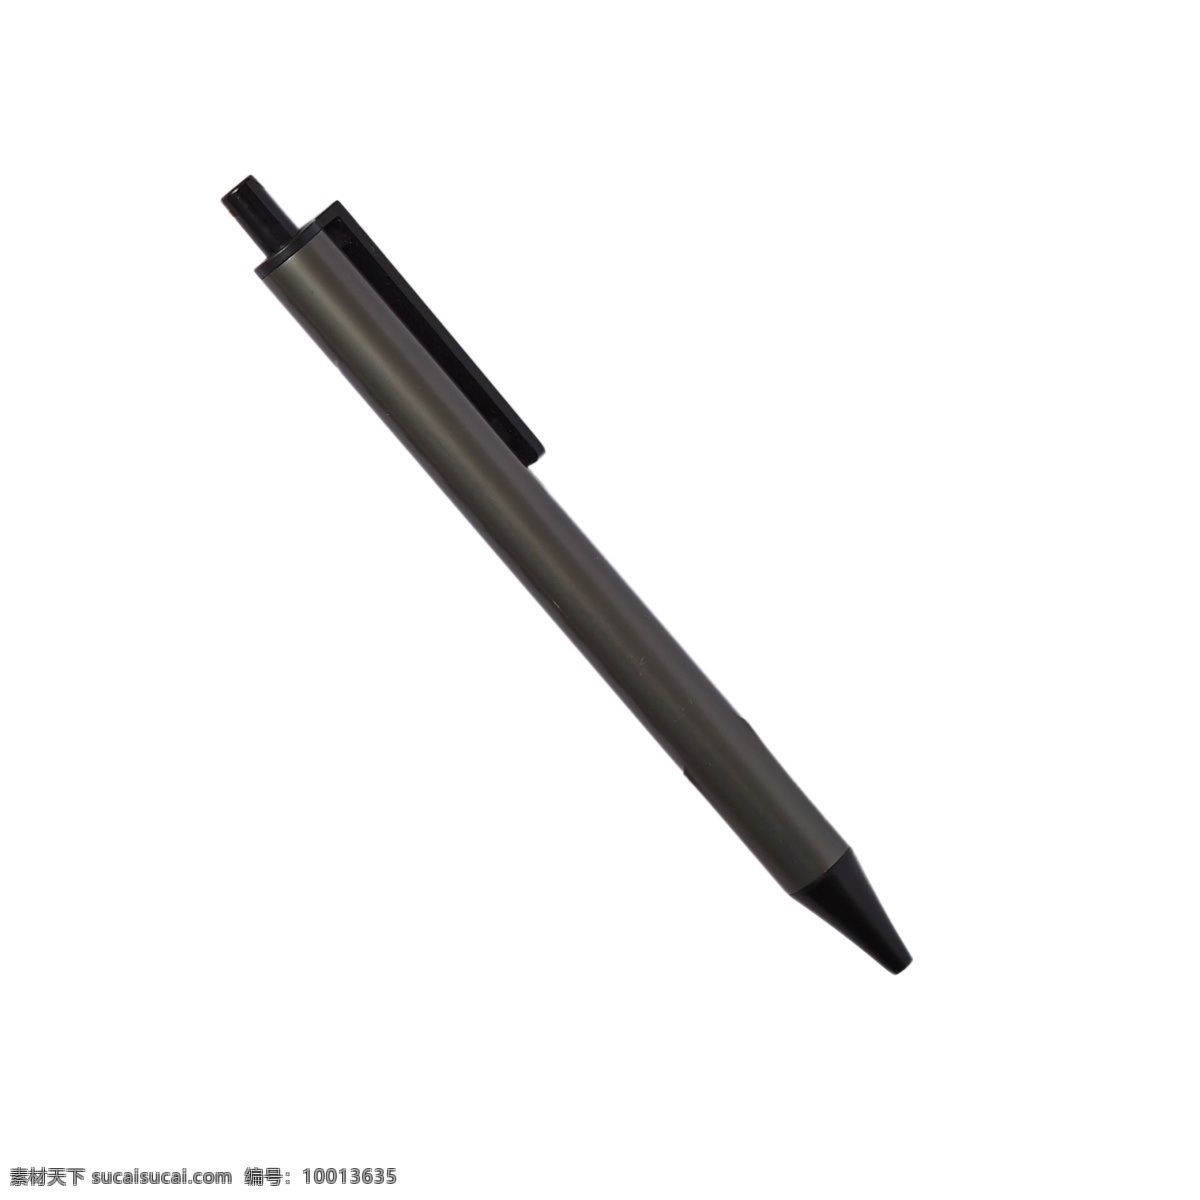 黑色铅笔 圆珠笔 铅笔 文具 办公用品 实物 实物免扣 实物下载